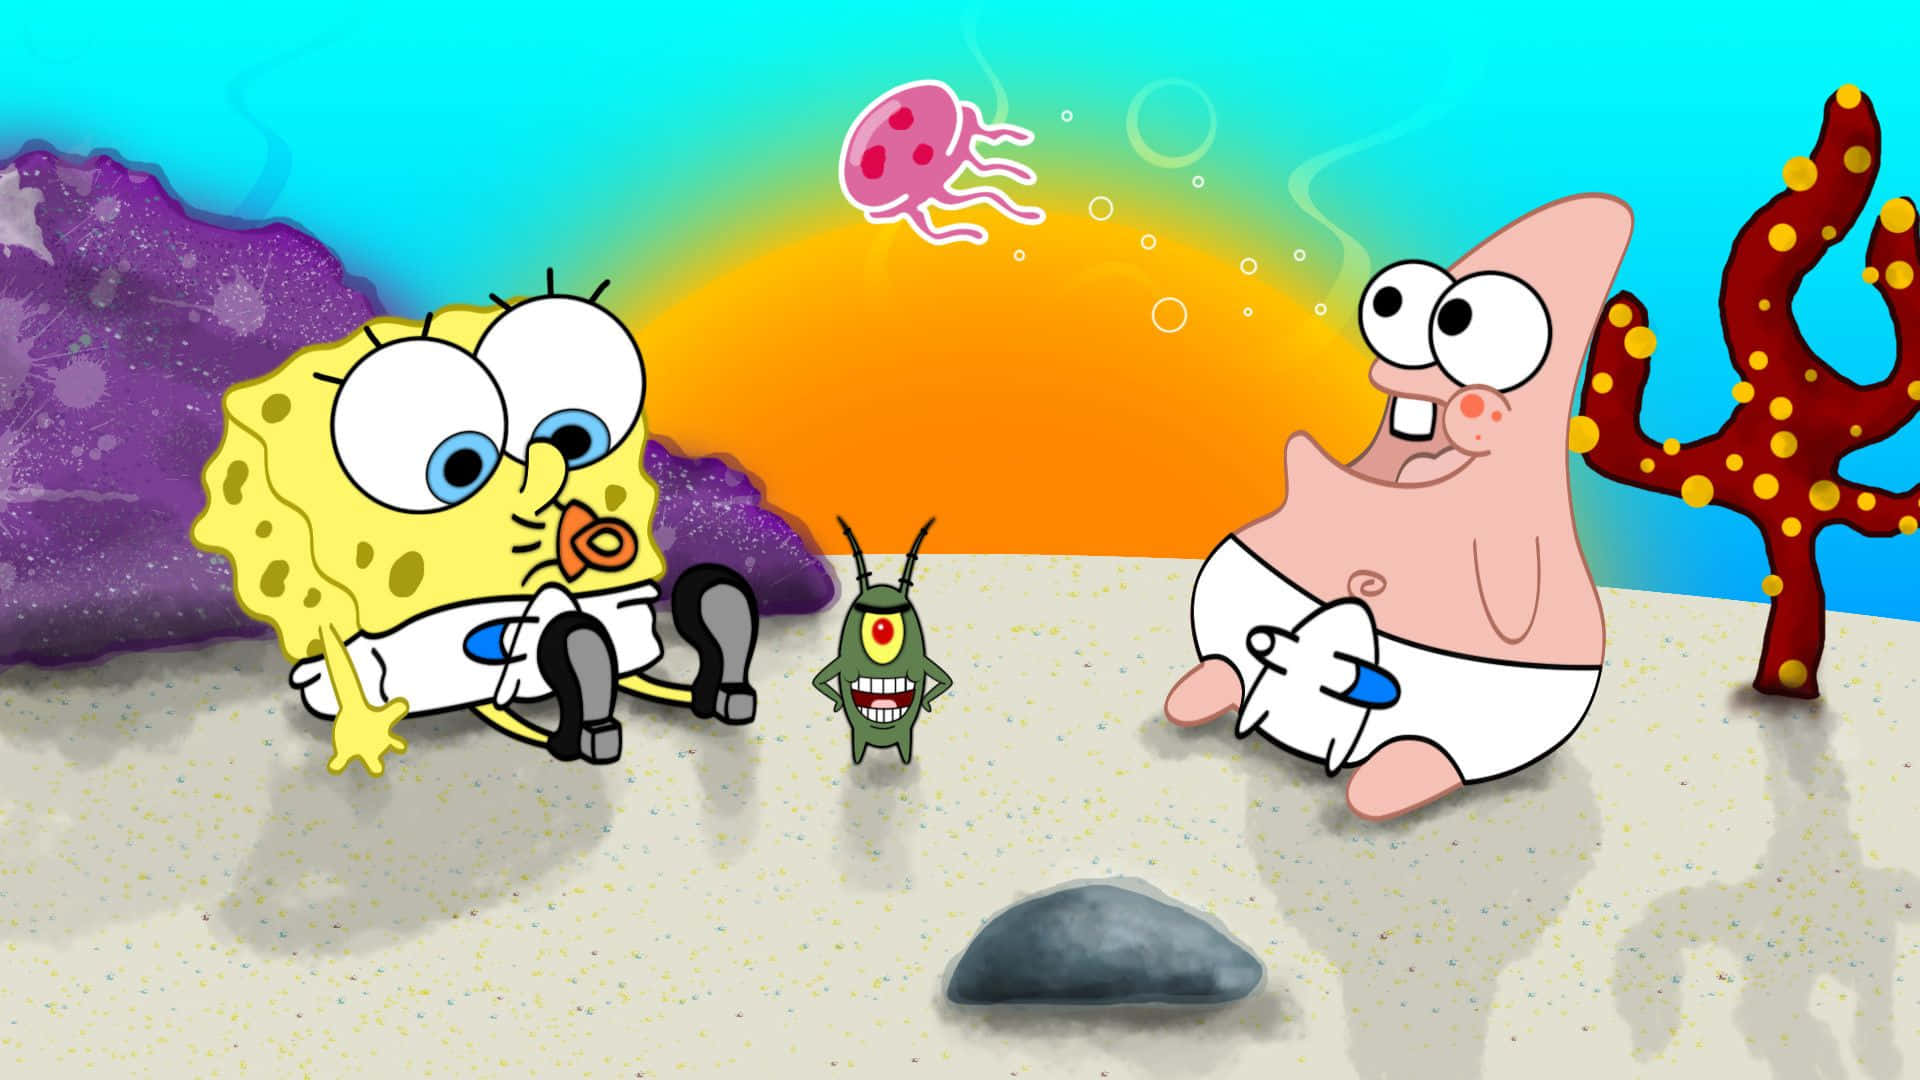 Patrickbebé Y Spongebob Estético De Escritorio. Fondo de pantalla